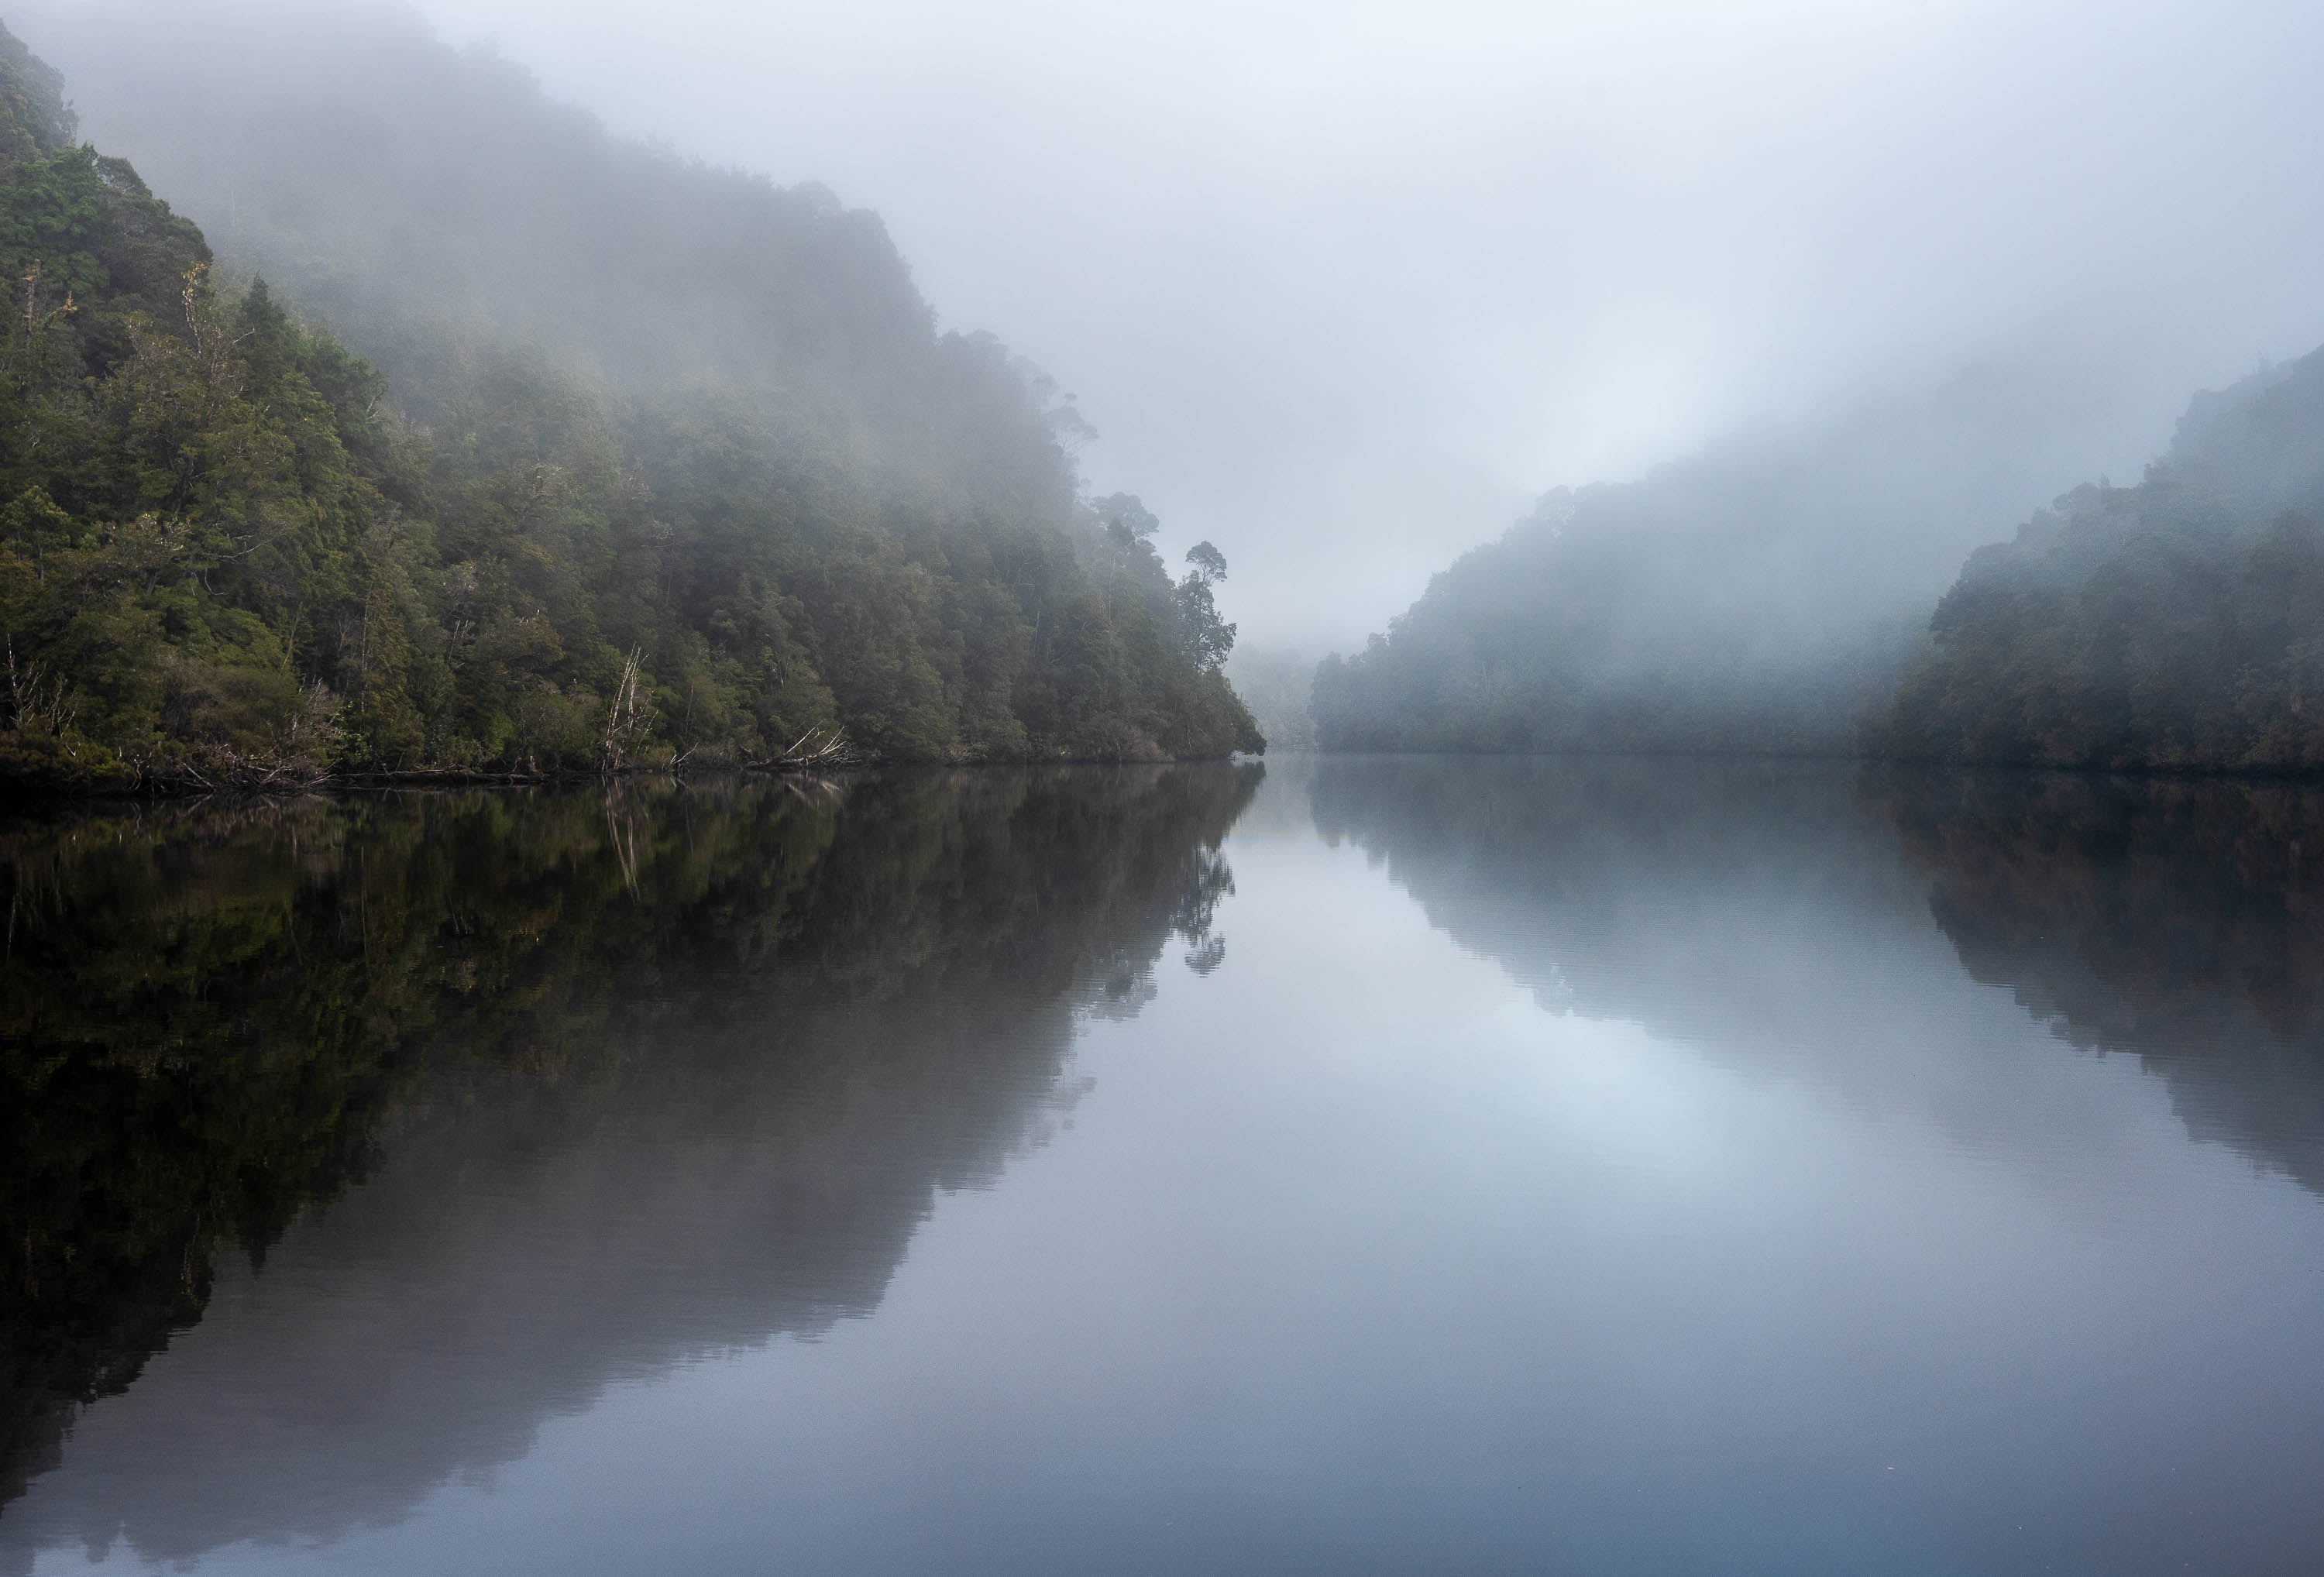 The Gordon River #2, Tasmania